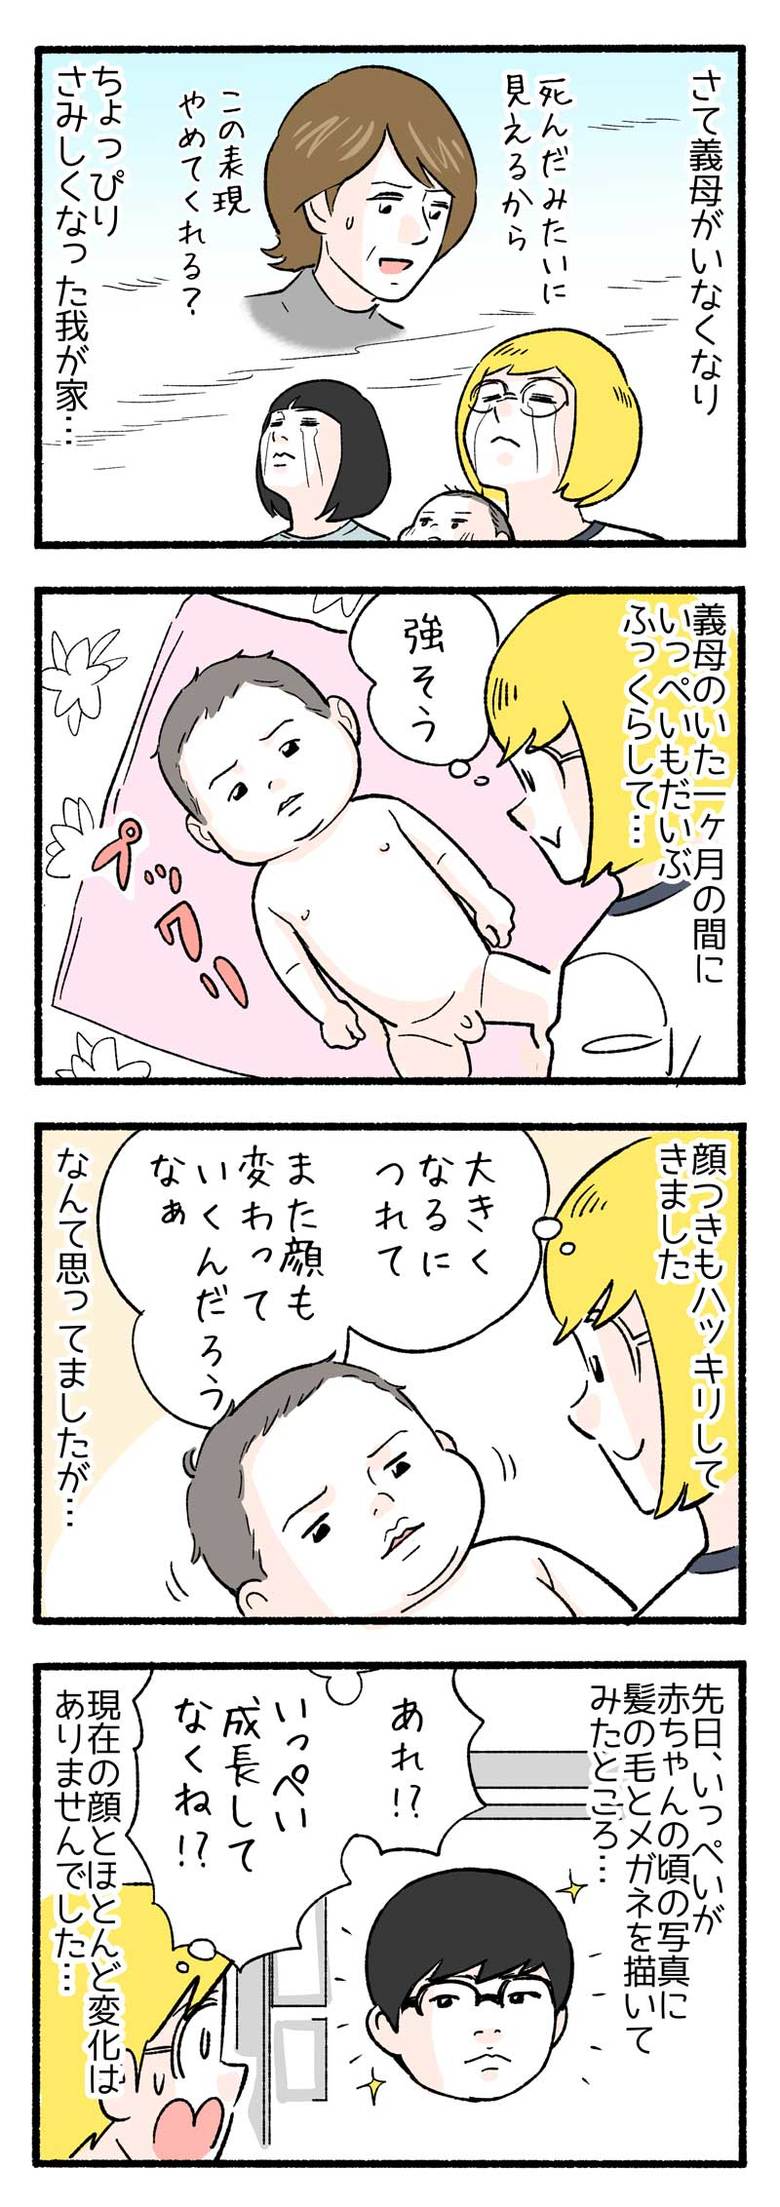 manga-nihipapa11-4